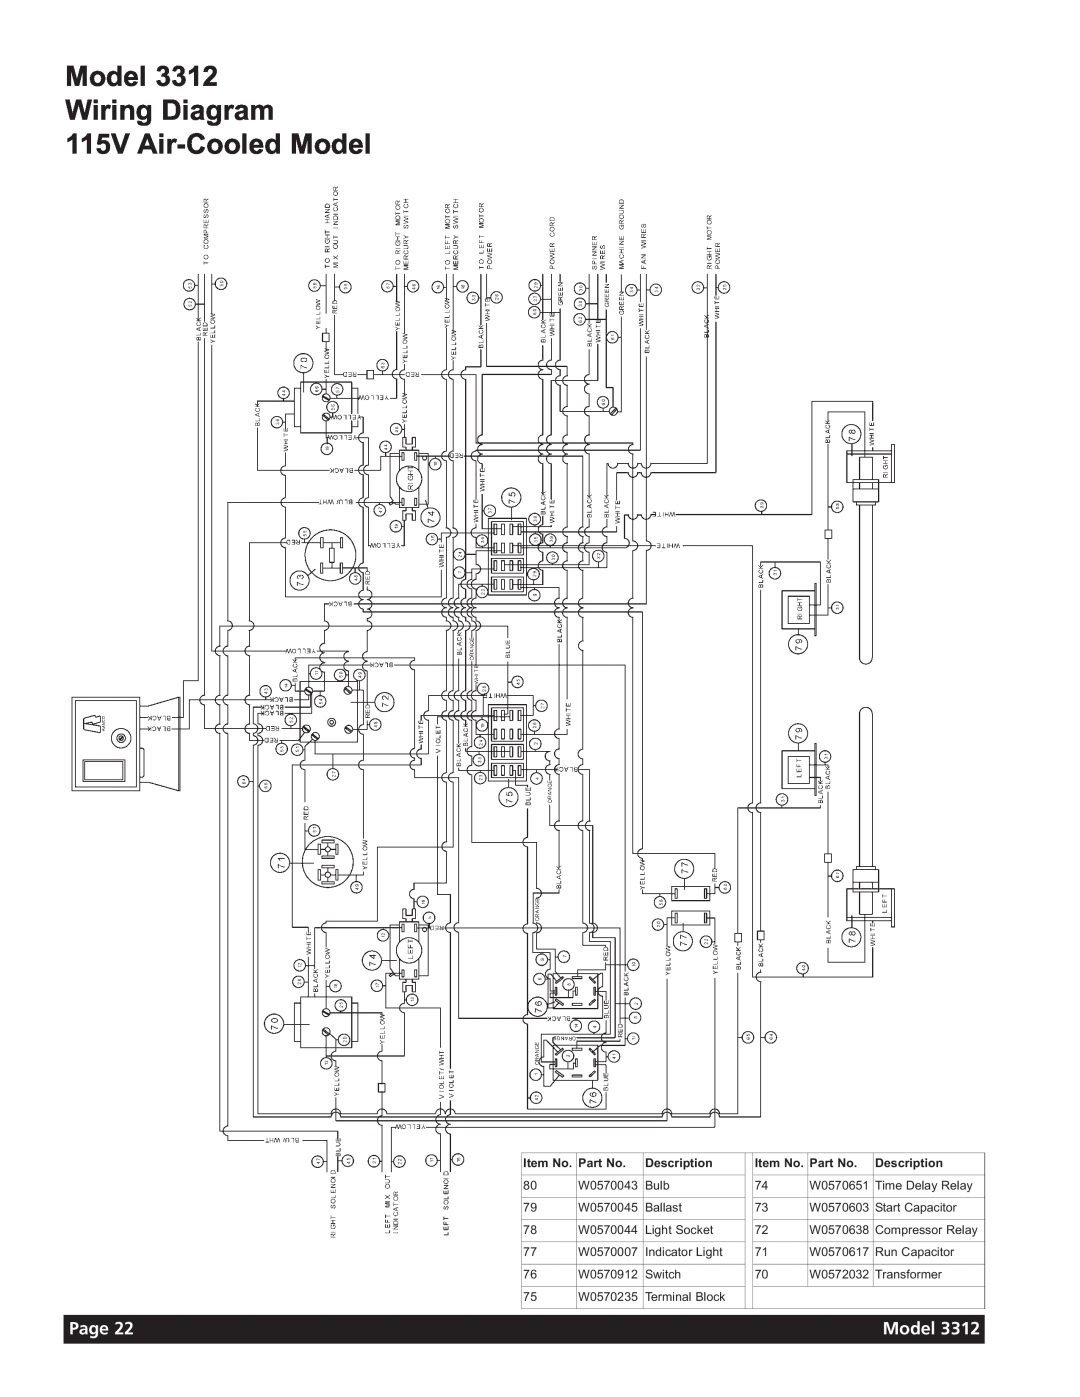 Grindmaster 3311 manual Model Wiring Diagram 115V Air-CooledModel, Page, Item No, Description 